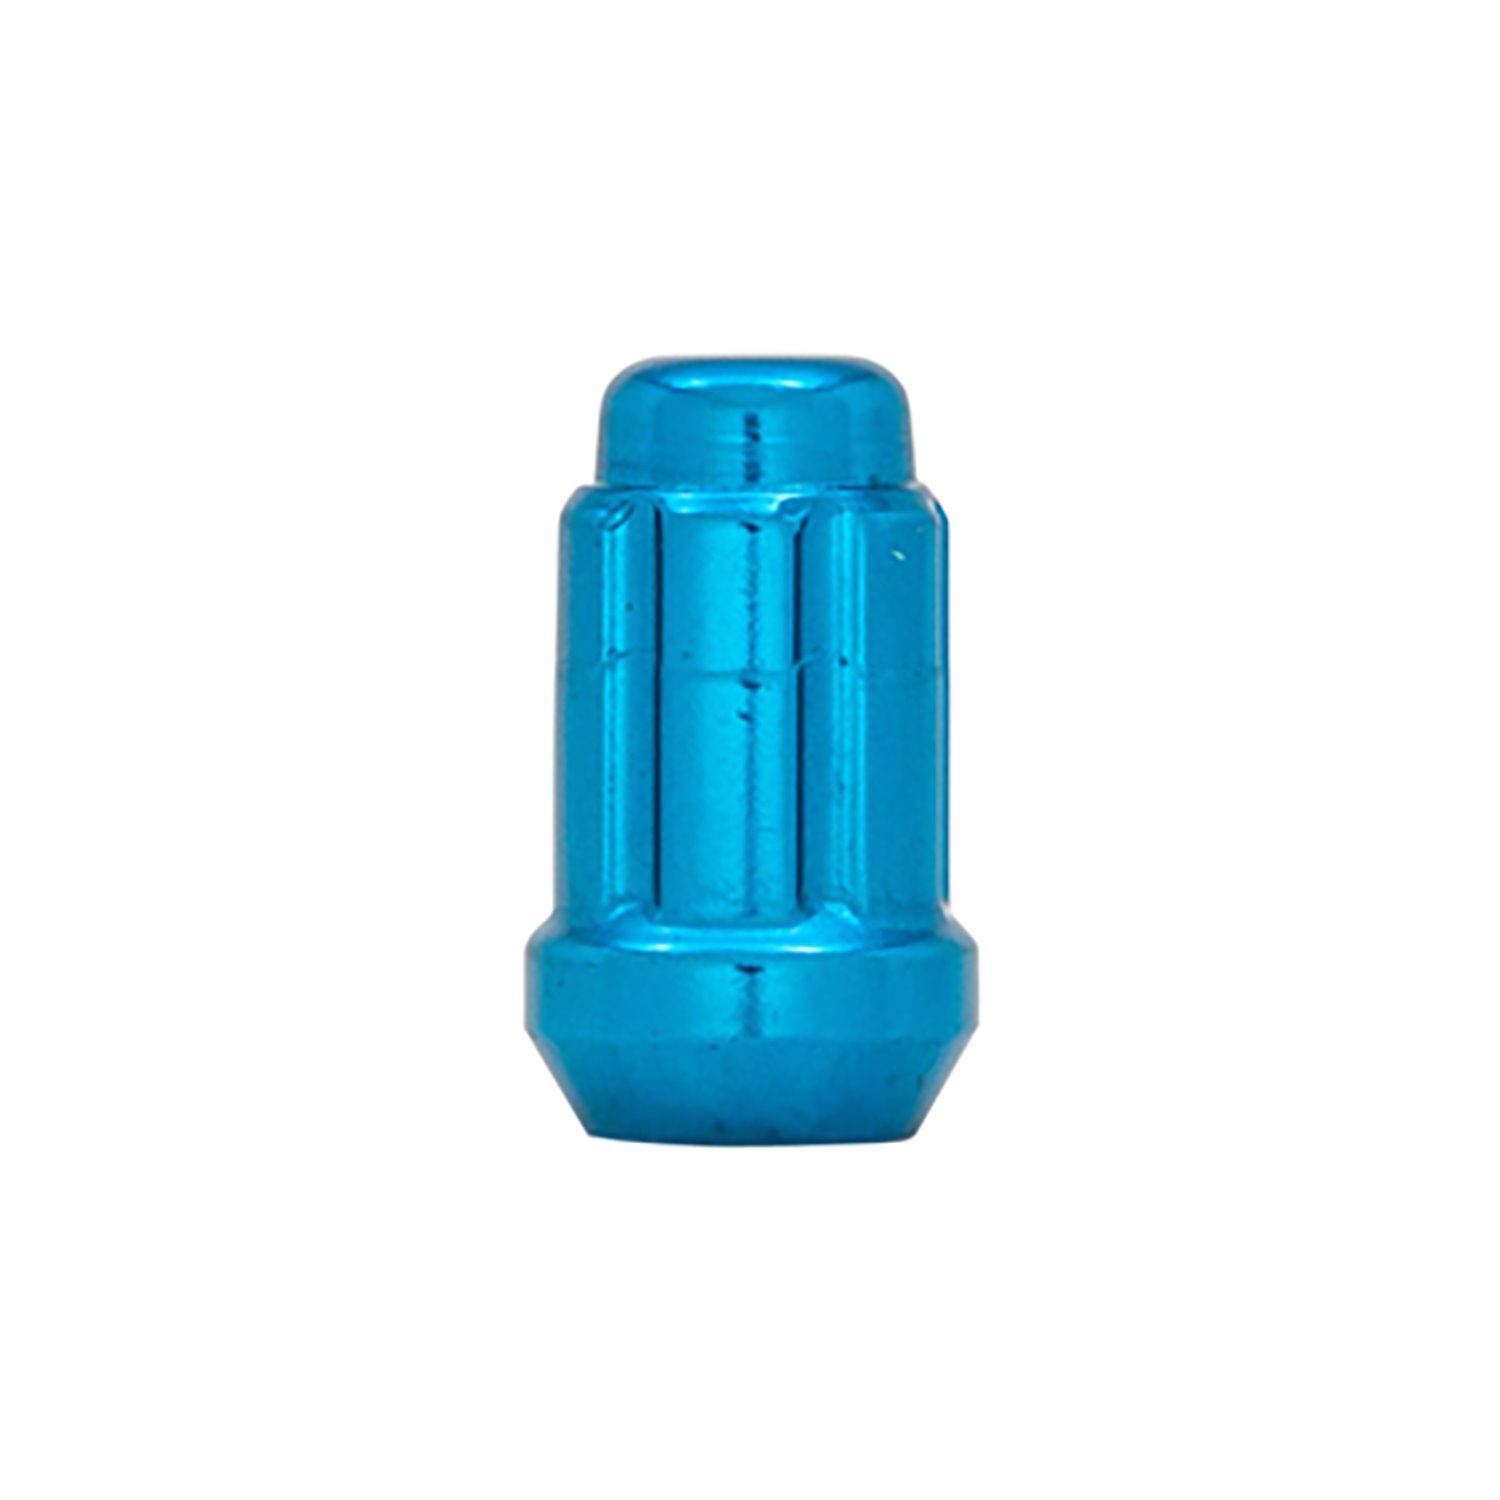 21138BL Small Diameter Acorn-Lug Kit, 12 mm x 1.50, Blue